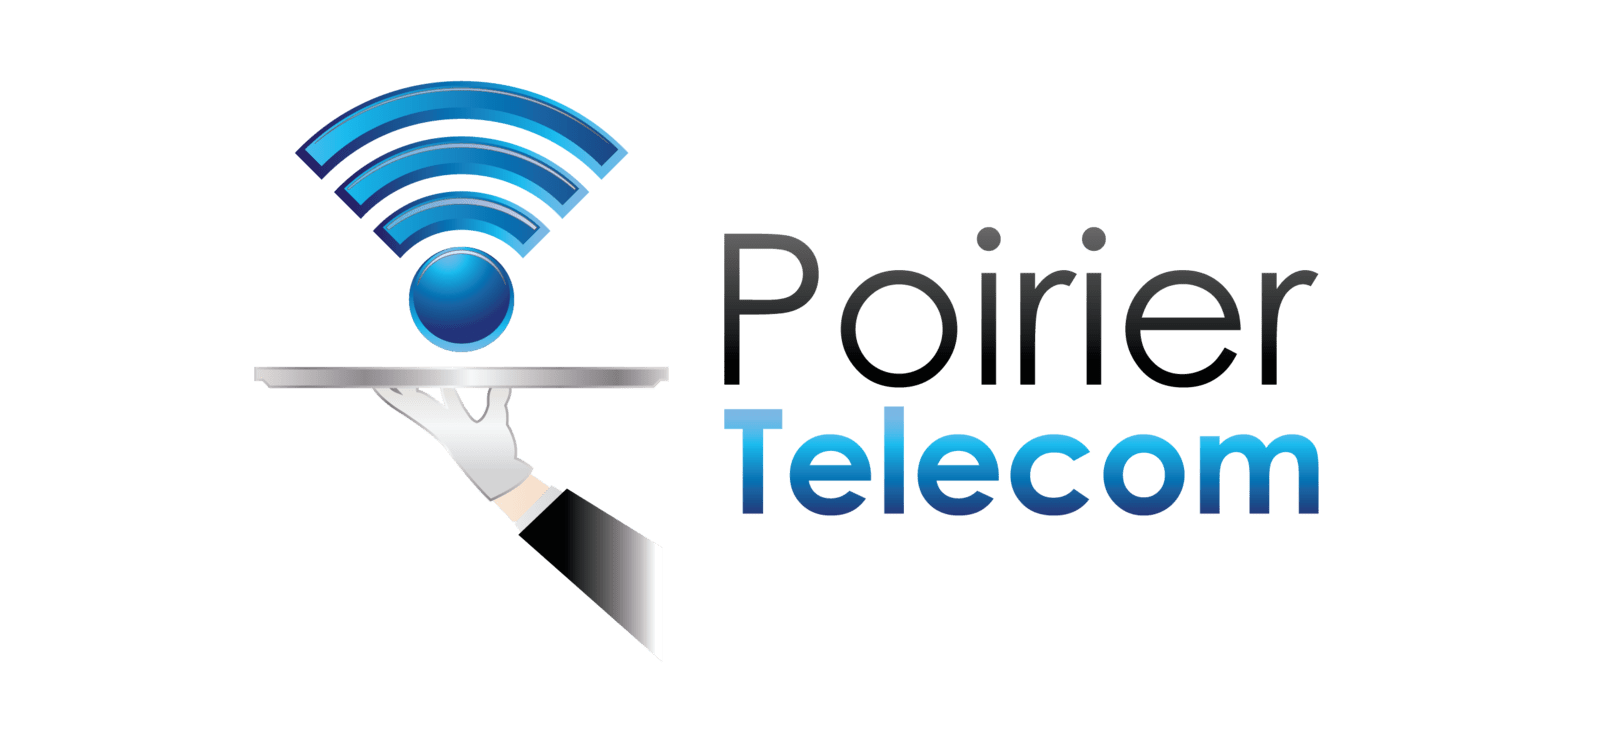 Poirier Telecom